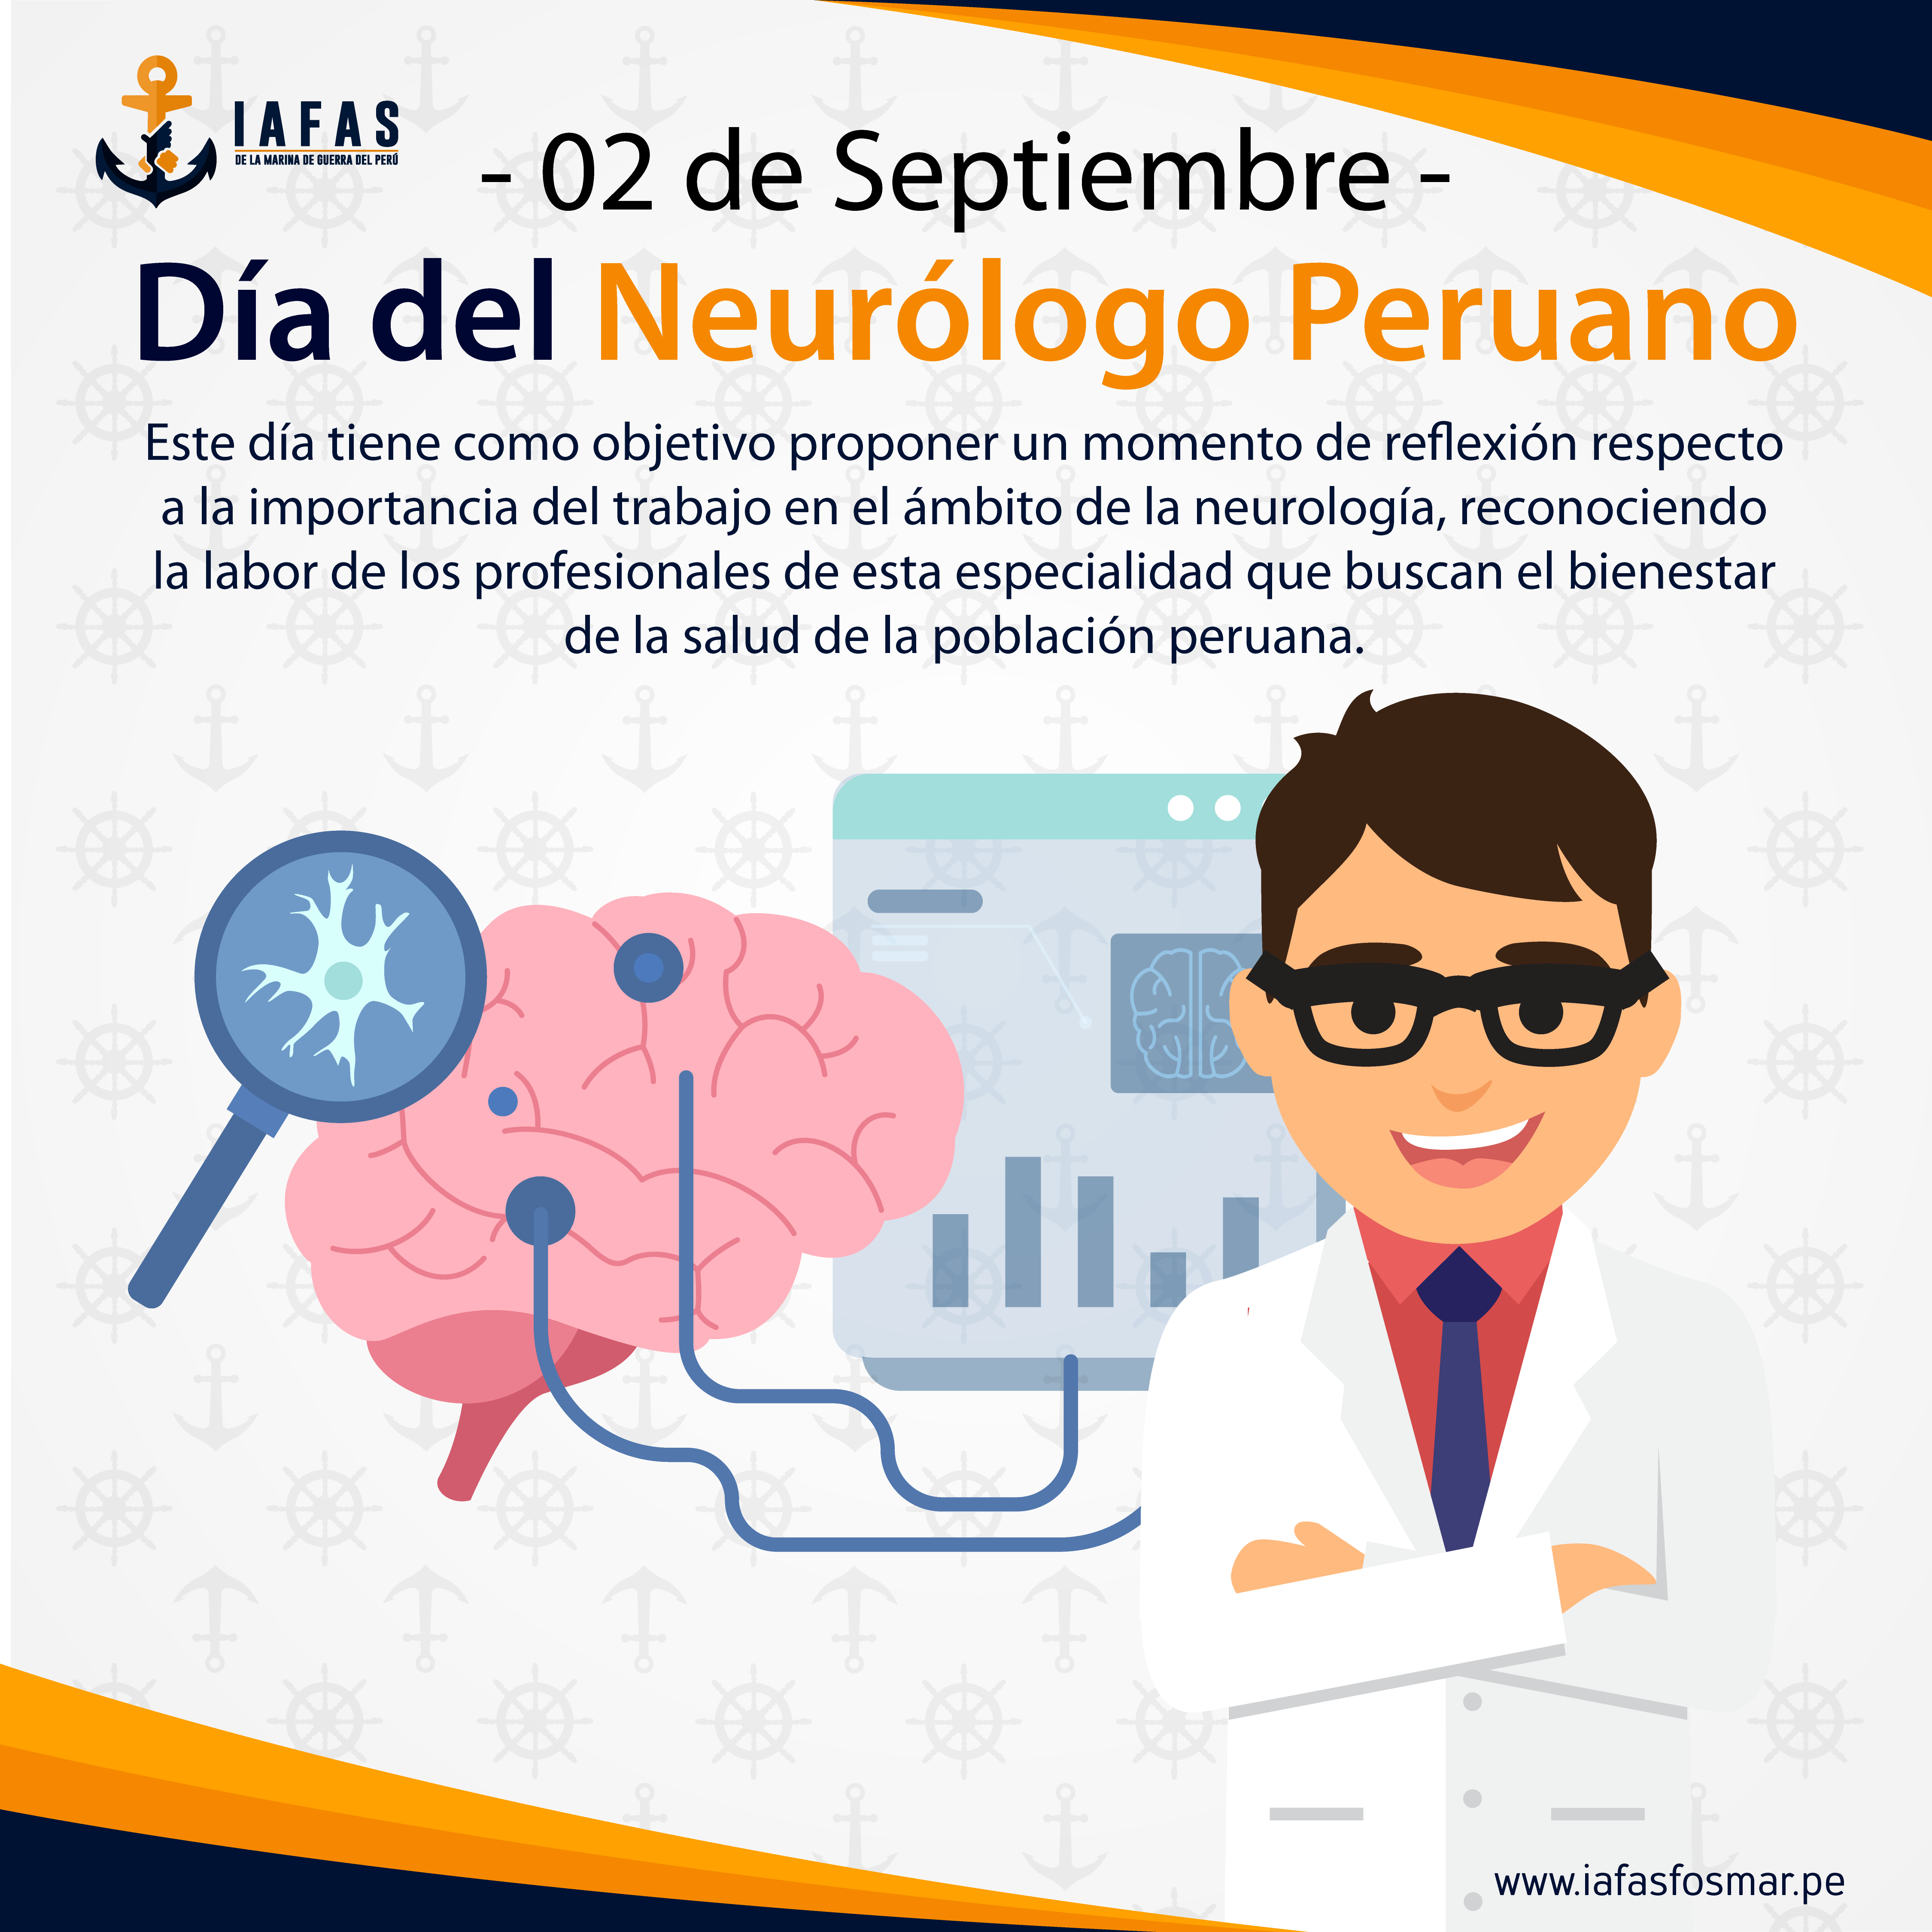 Día del Neurólogo Peruano (02 de septiembre)